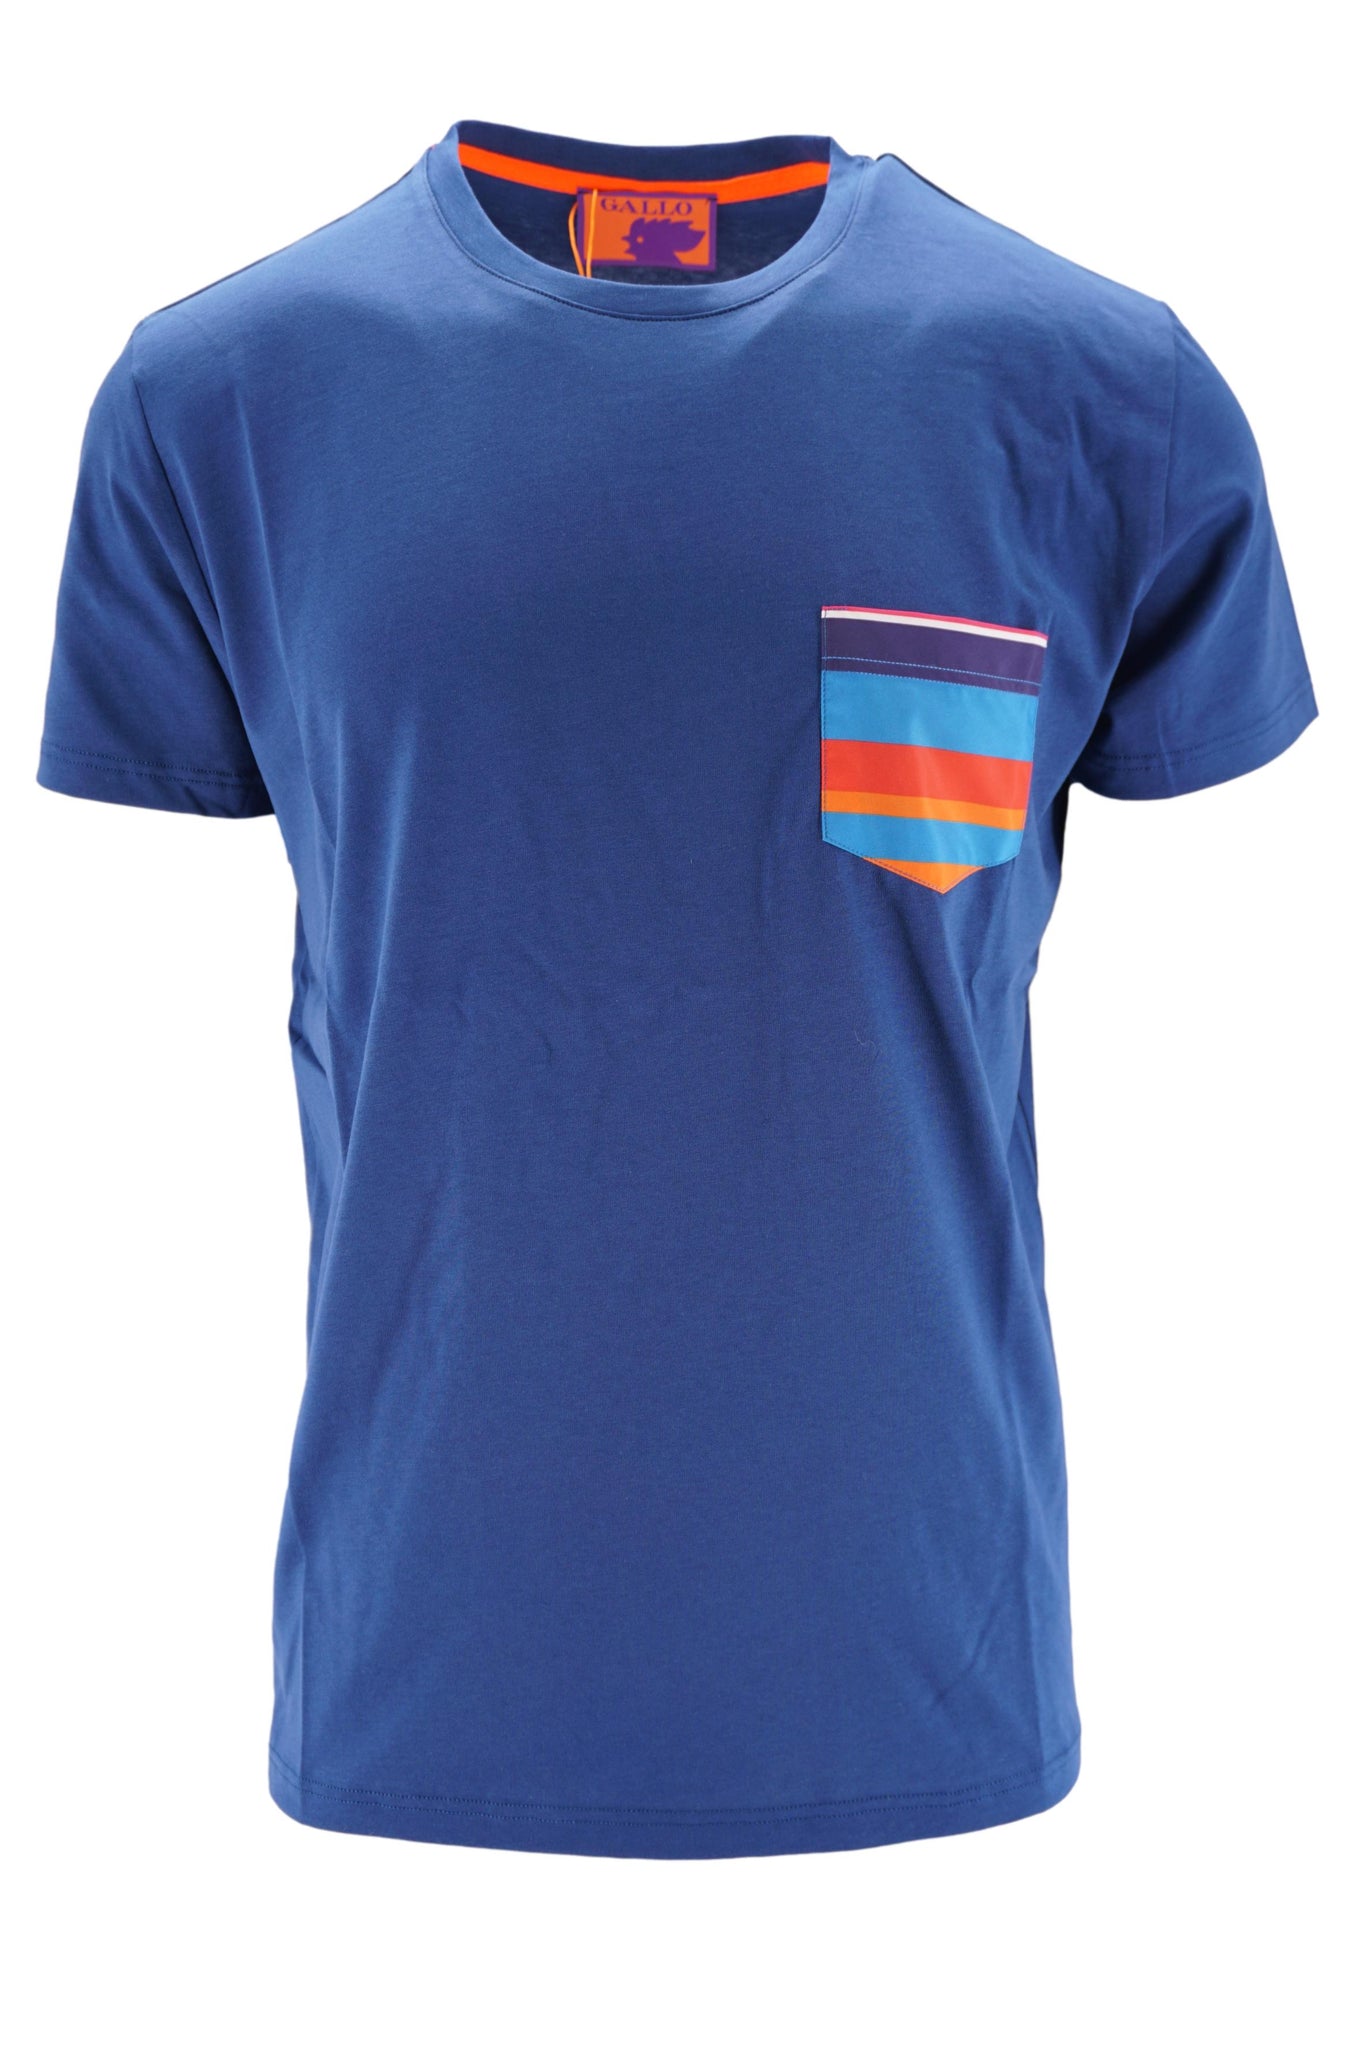 T-Shirt in Cotone con Taschino / Bluette - Ideal Moda